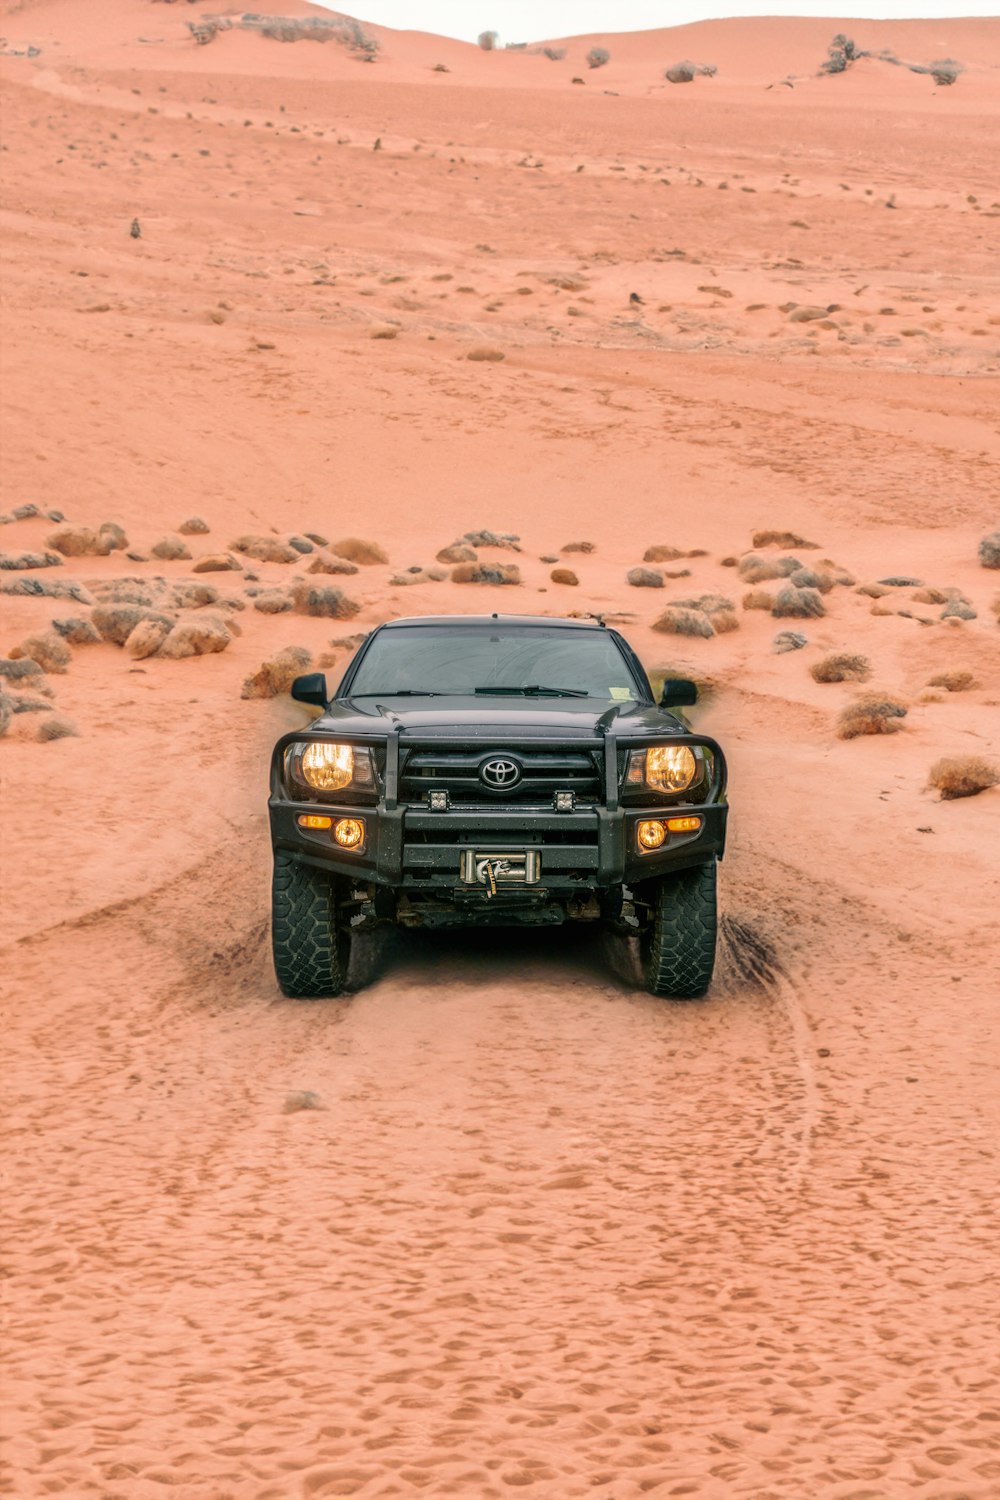 a black truck driving through a desert area